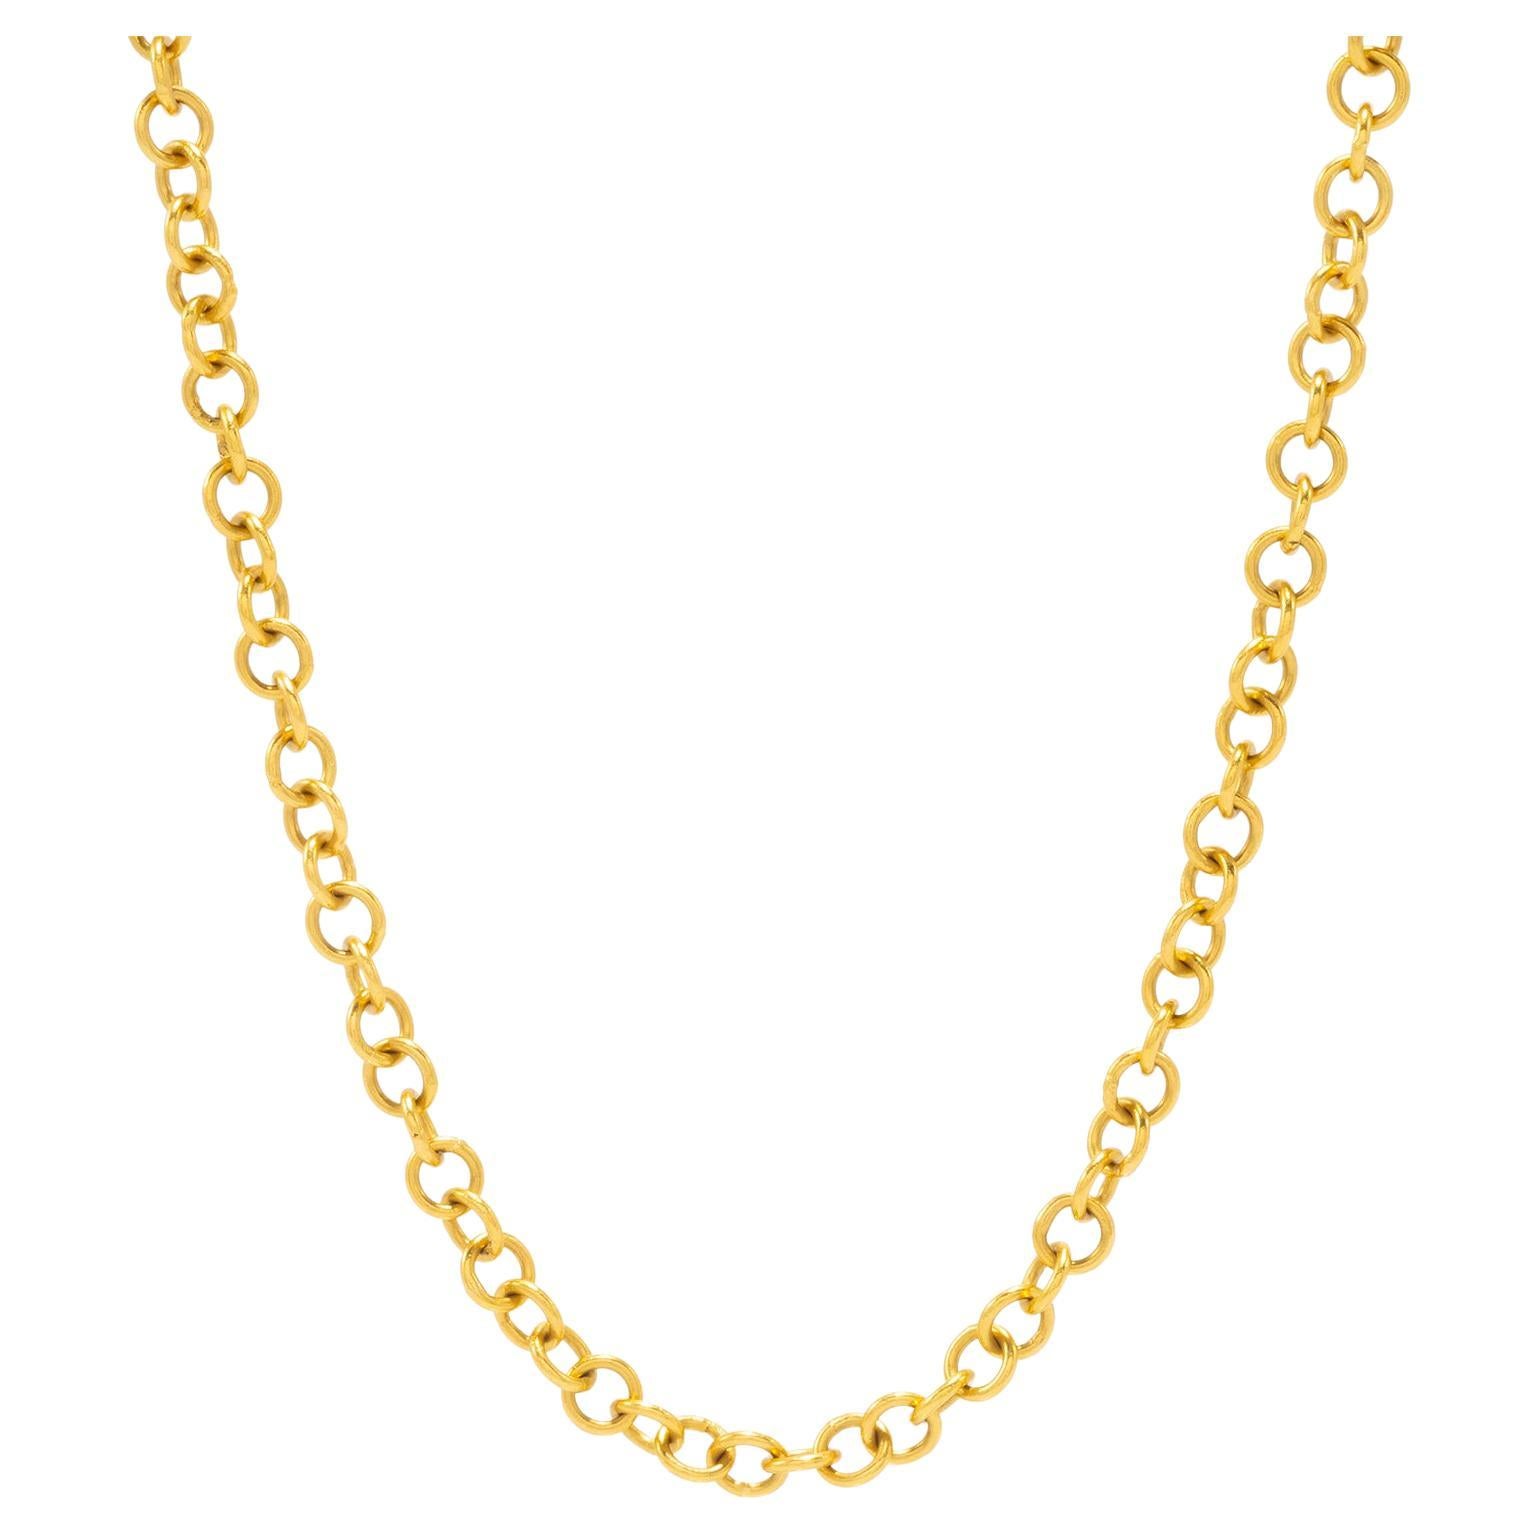 Tagili Designs Chain Necklaces